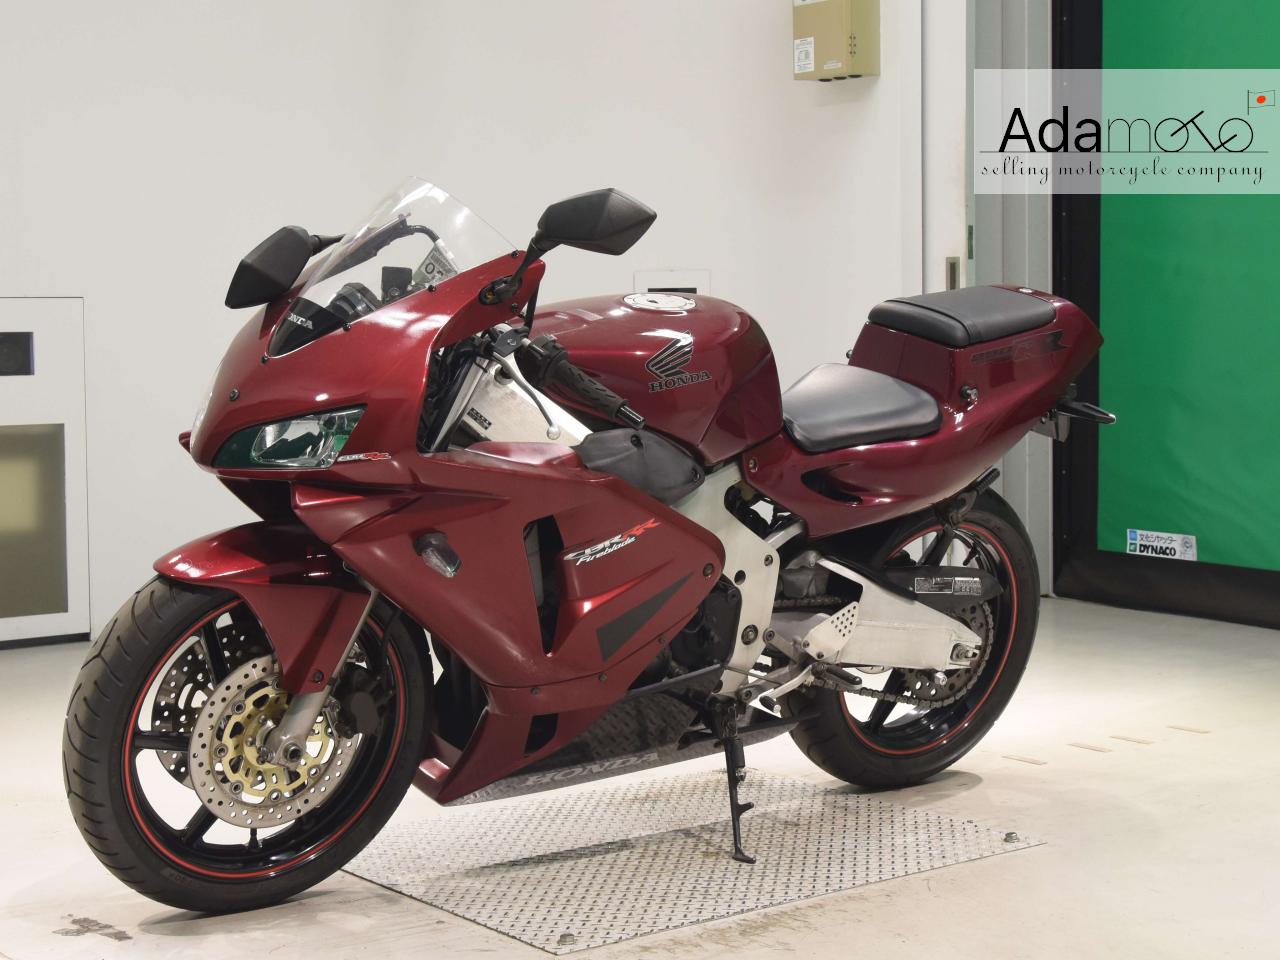 Honda CBR250RR - Adamoto - Motorcycles from Japan